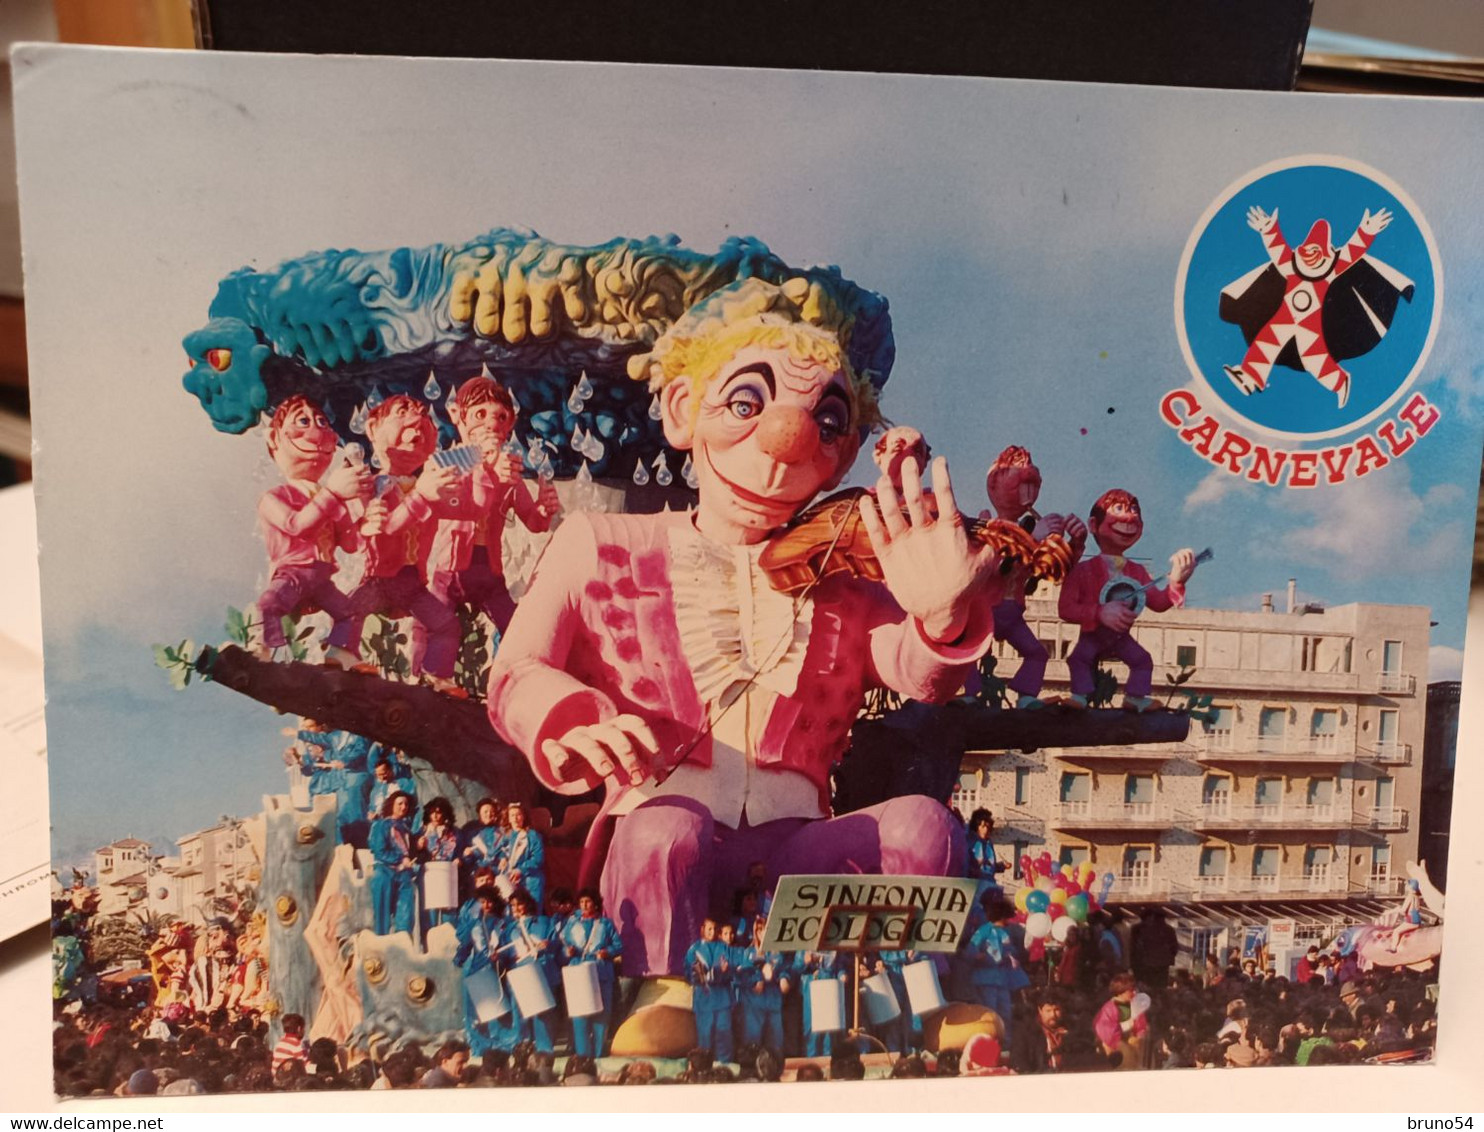 4 cartoline Carnevale di Viareggio anni 80 ,suonatori incompresi,il sol dell'avvenir,el matador,carnevale al sole